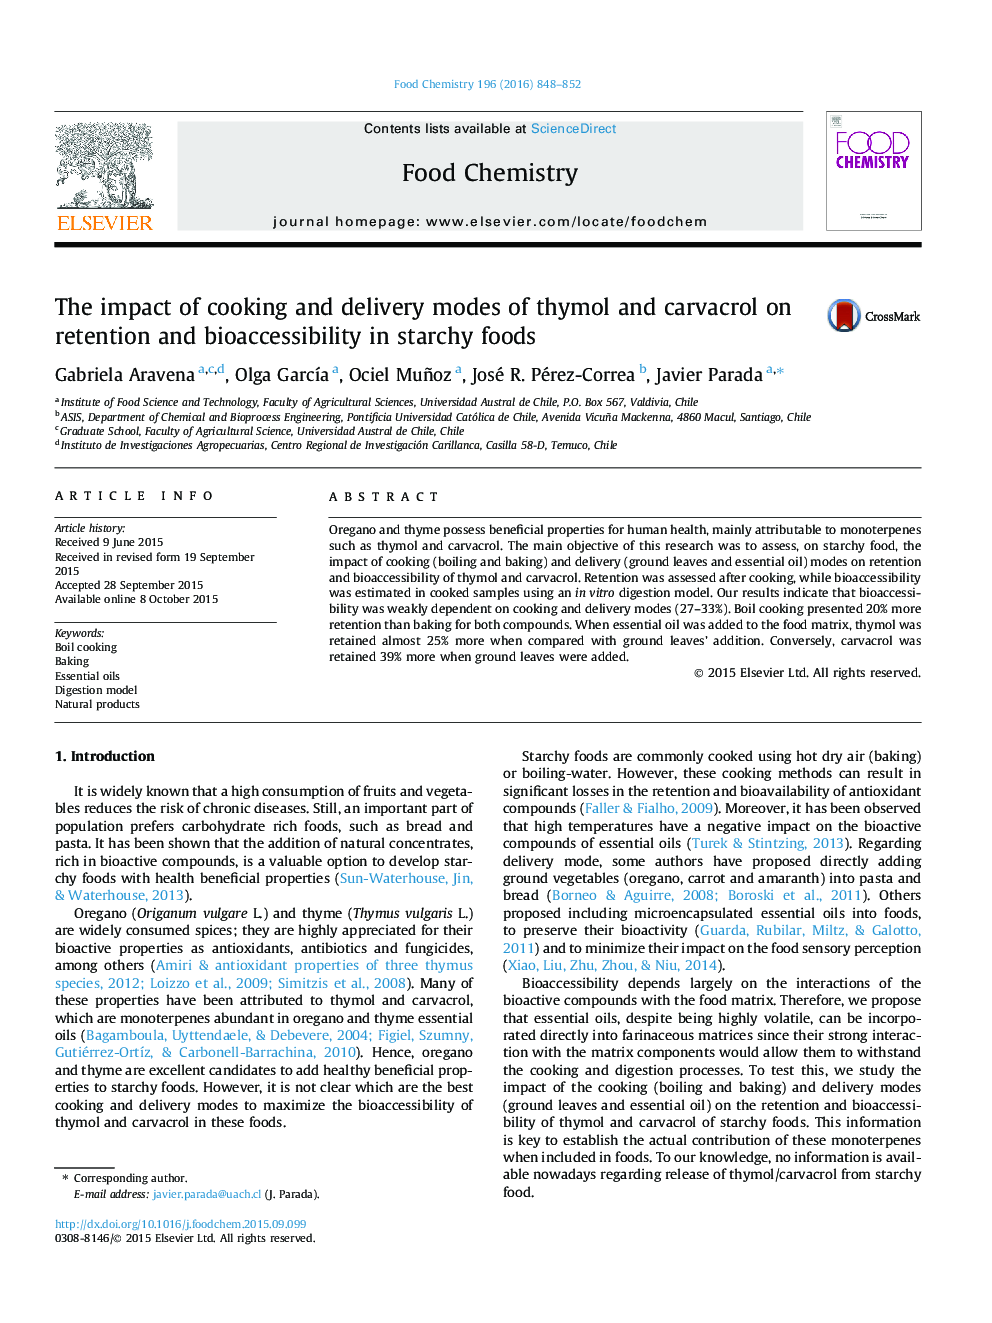 تأثیر حالت های پخت و پز و تحویل تیمول و کارواکرول بر حفظ و قابلیت دسترسی به غذا در غذاهای نشاسته ای 